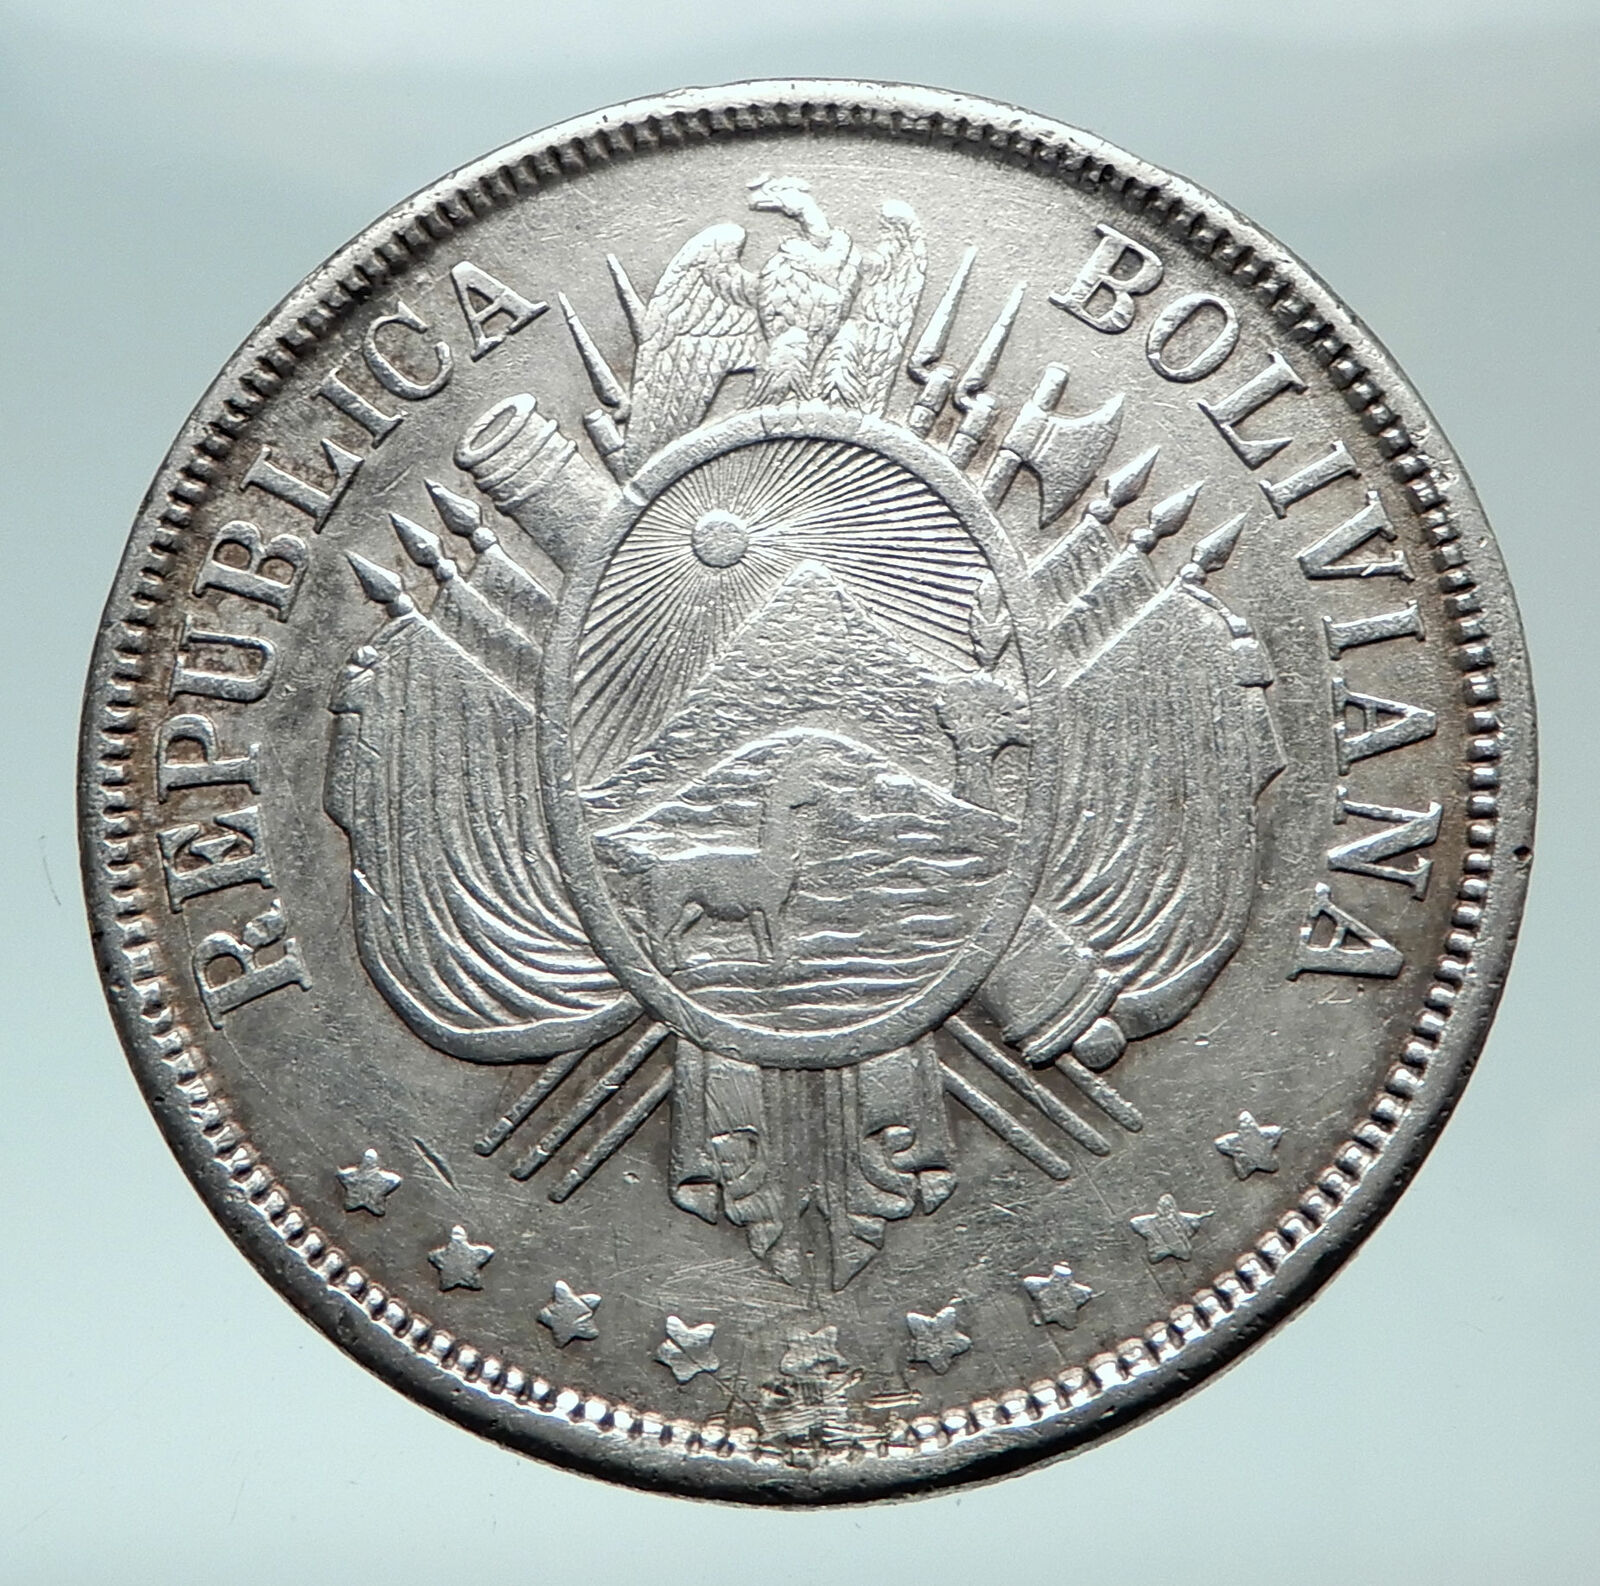 1873 BOLIVIA Antique Wreath Eagle Hill Genuine Boliviano Silver Coin i81483